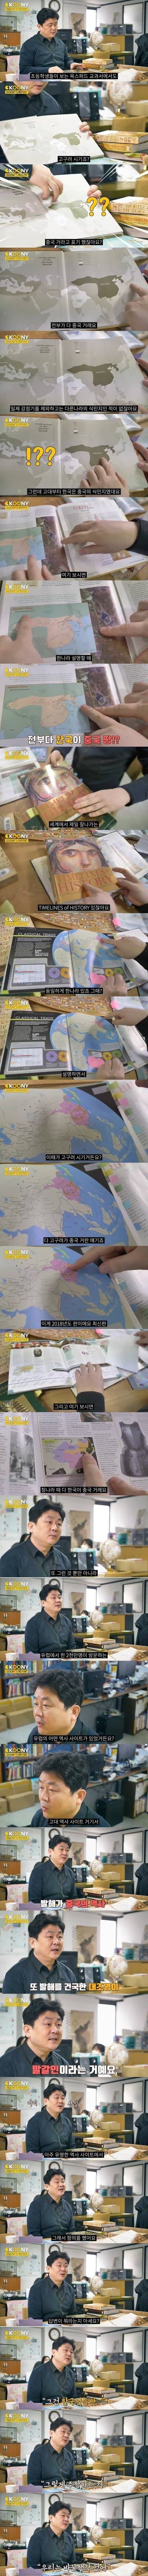 세계가 생각하는 한국 역사